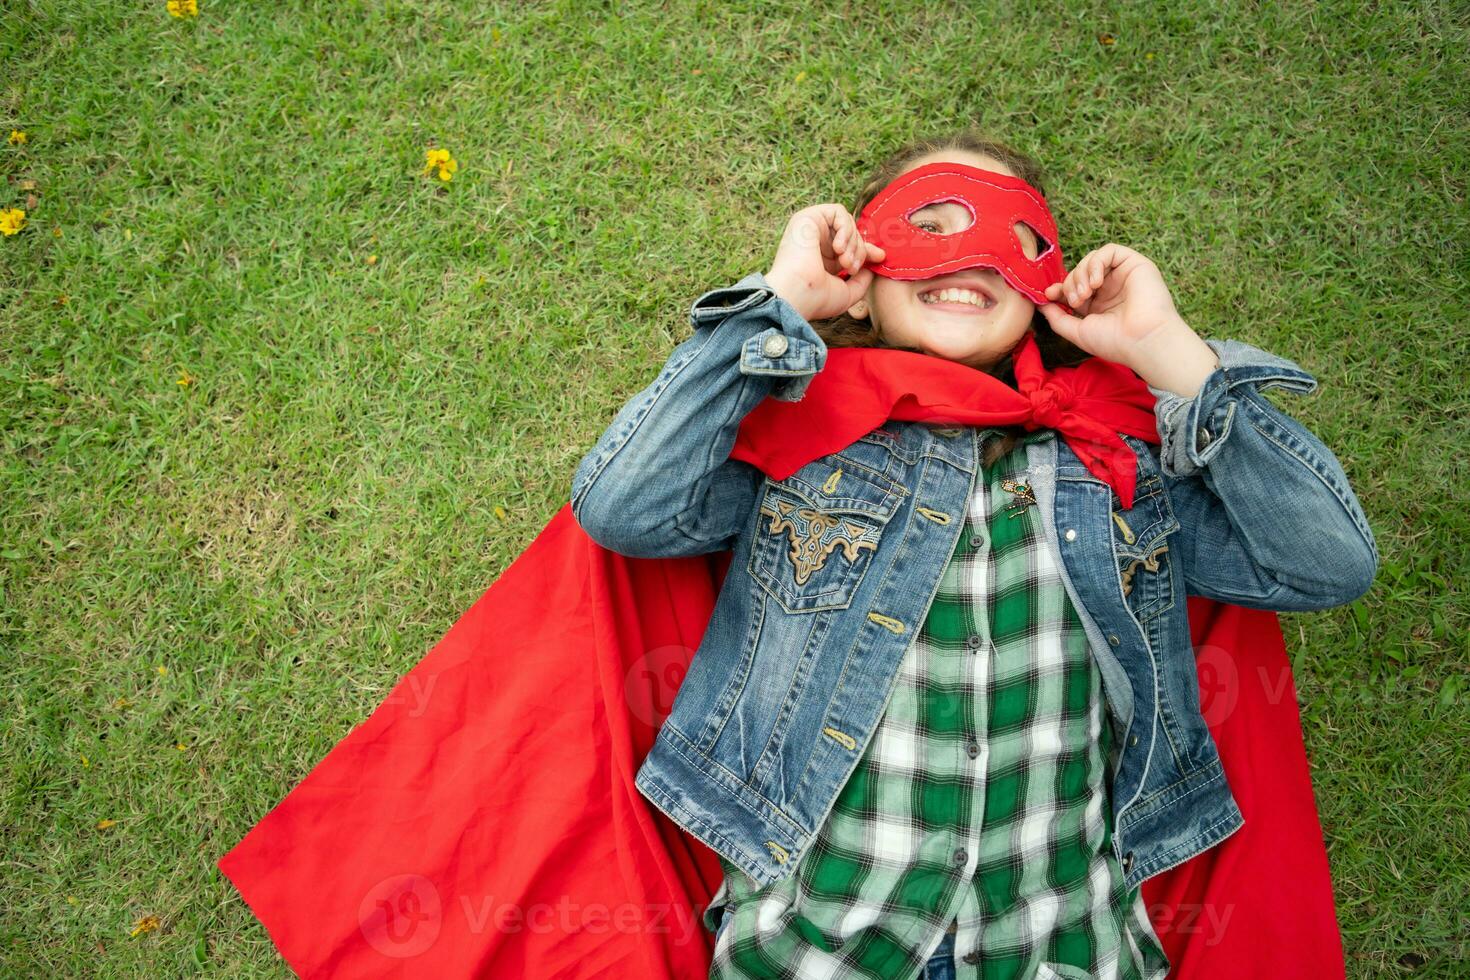 en un hermosa día en el parque, un joven niña disfruta su vacaciones. juguetón con un rojo superhéroe disfraz y mascarilla. foto